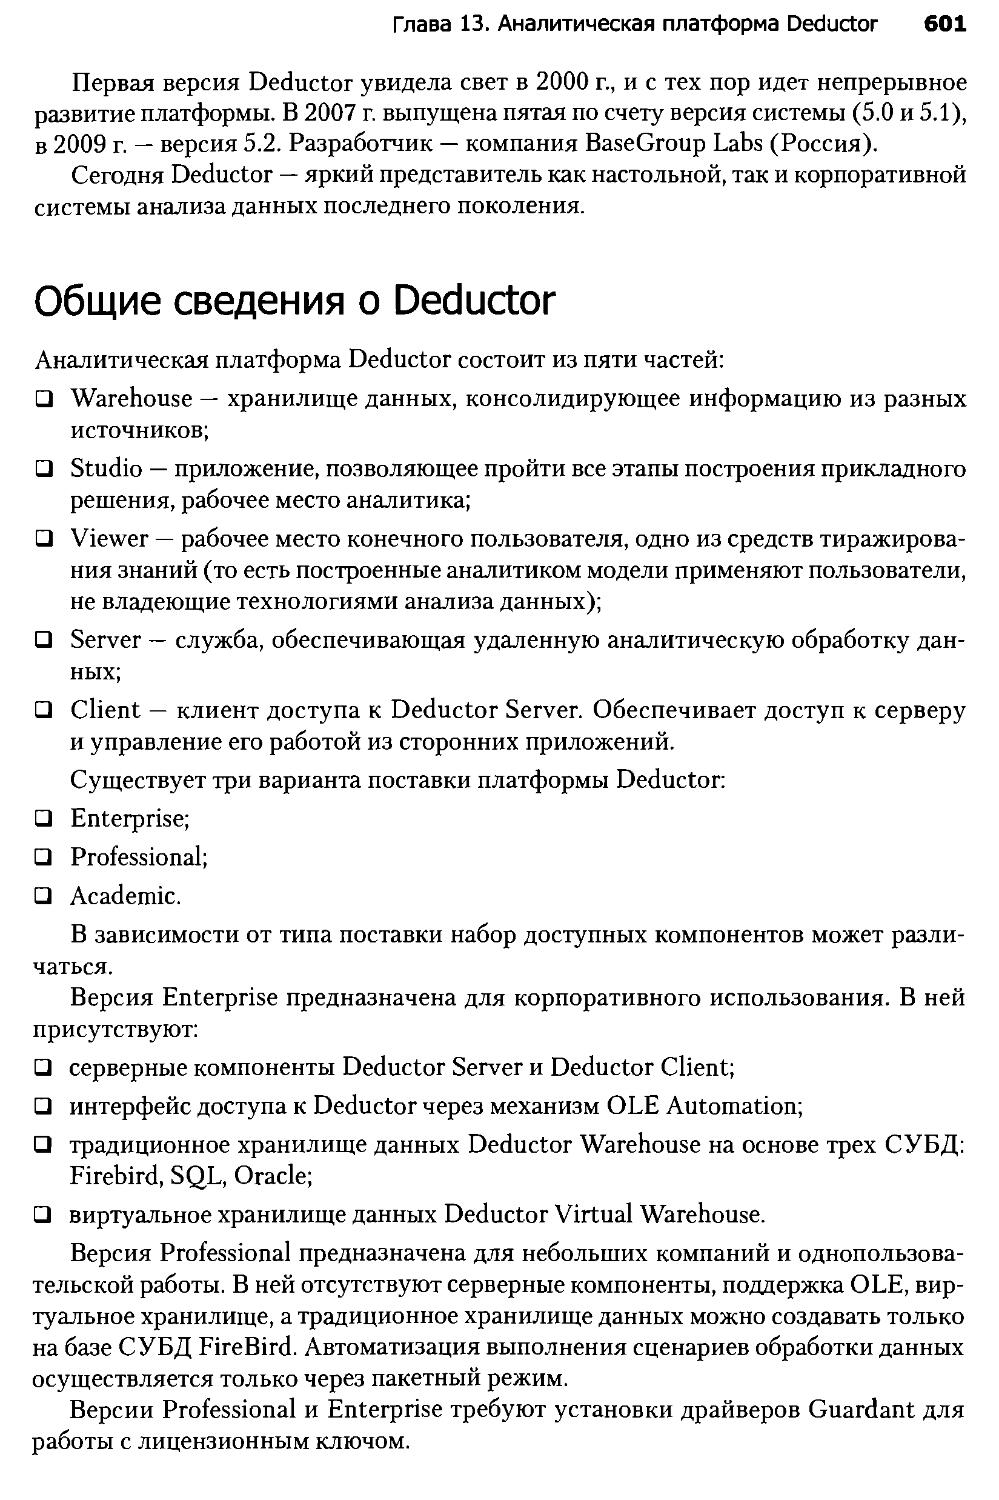 Общие сведения о Deductor